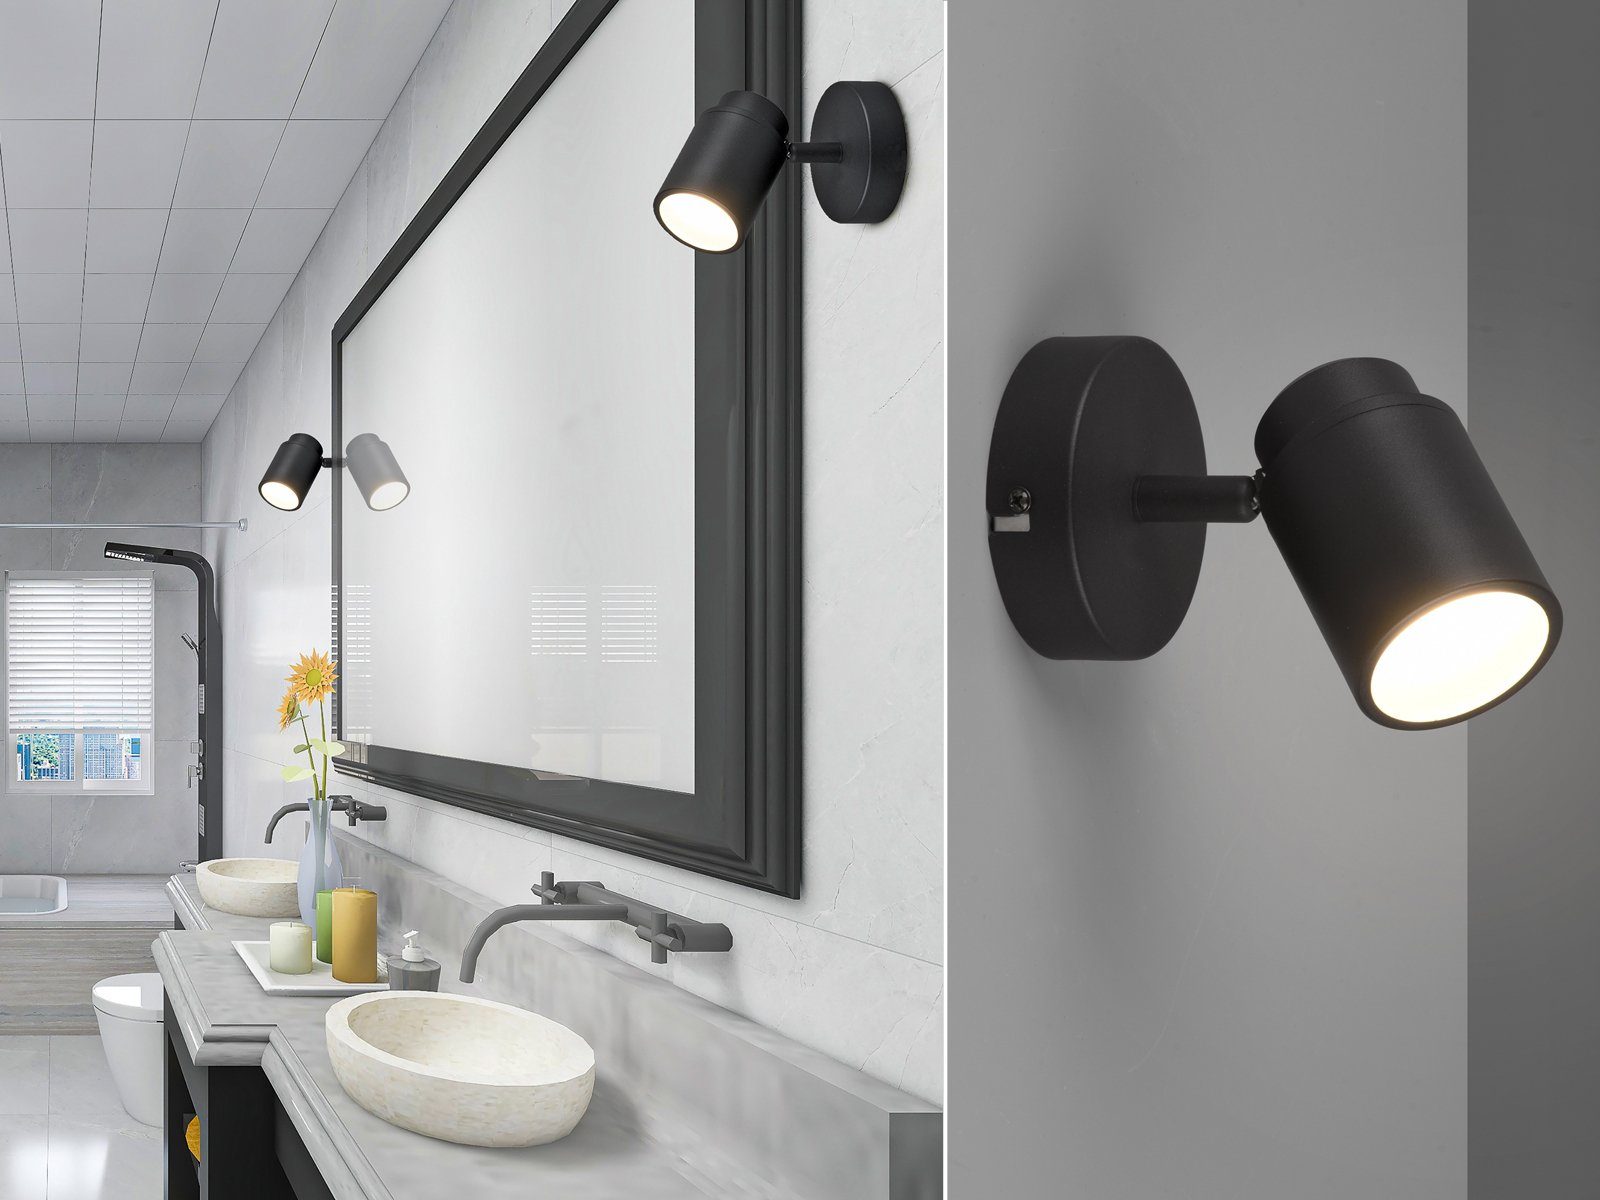 LED Design Spot Wand Spiegel Lampe Leuchte Spots drehbar Bild Beleuchtung Bad 